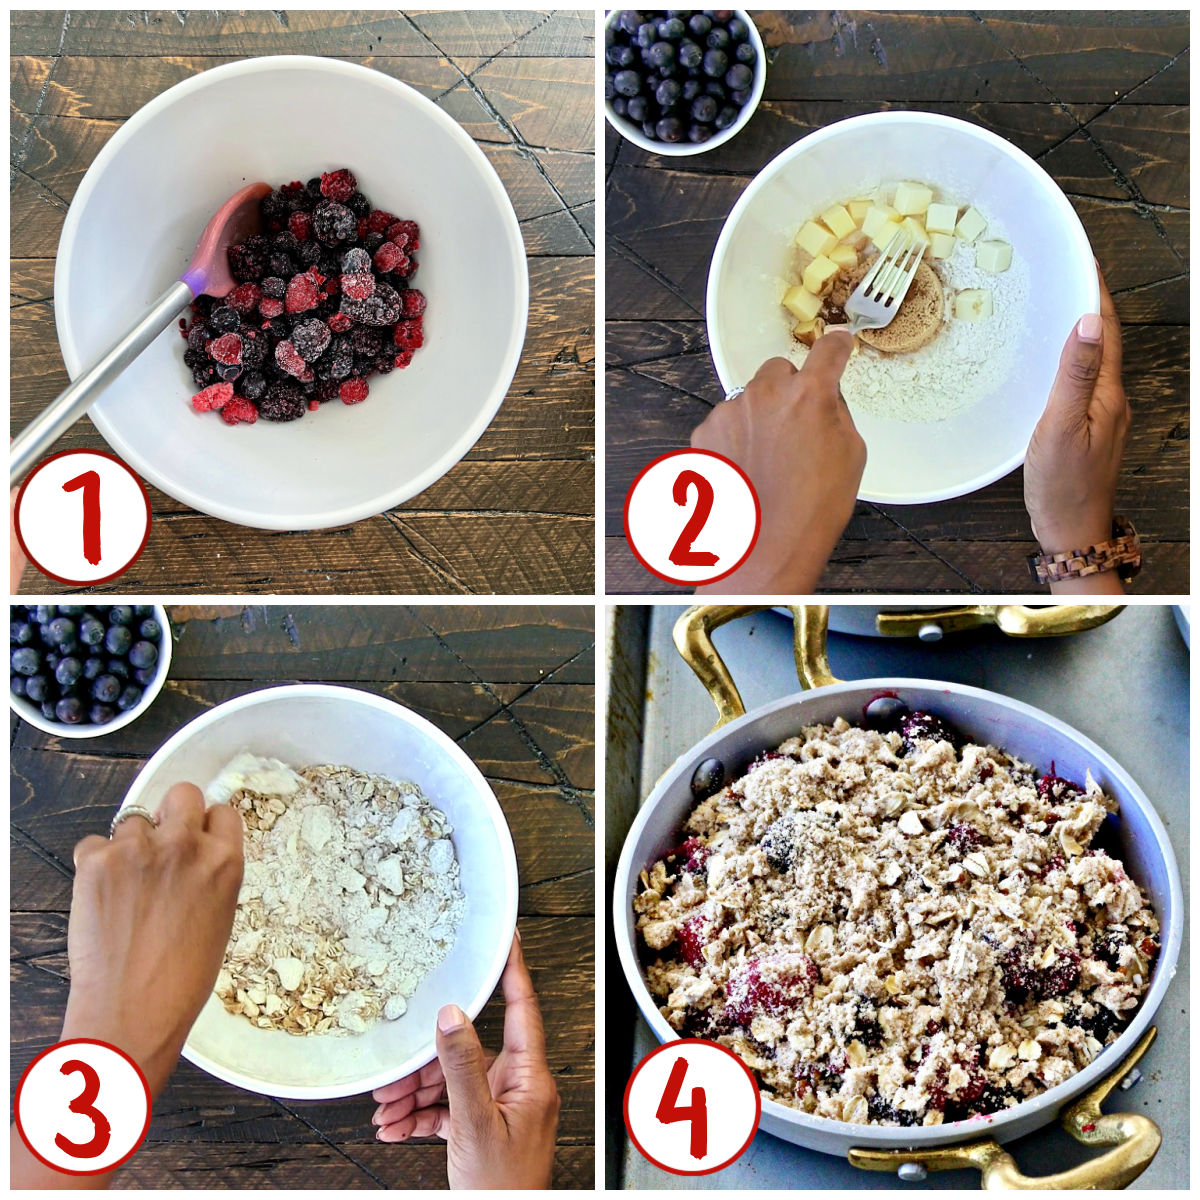 Steps for making berry crisp